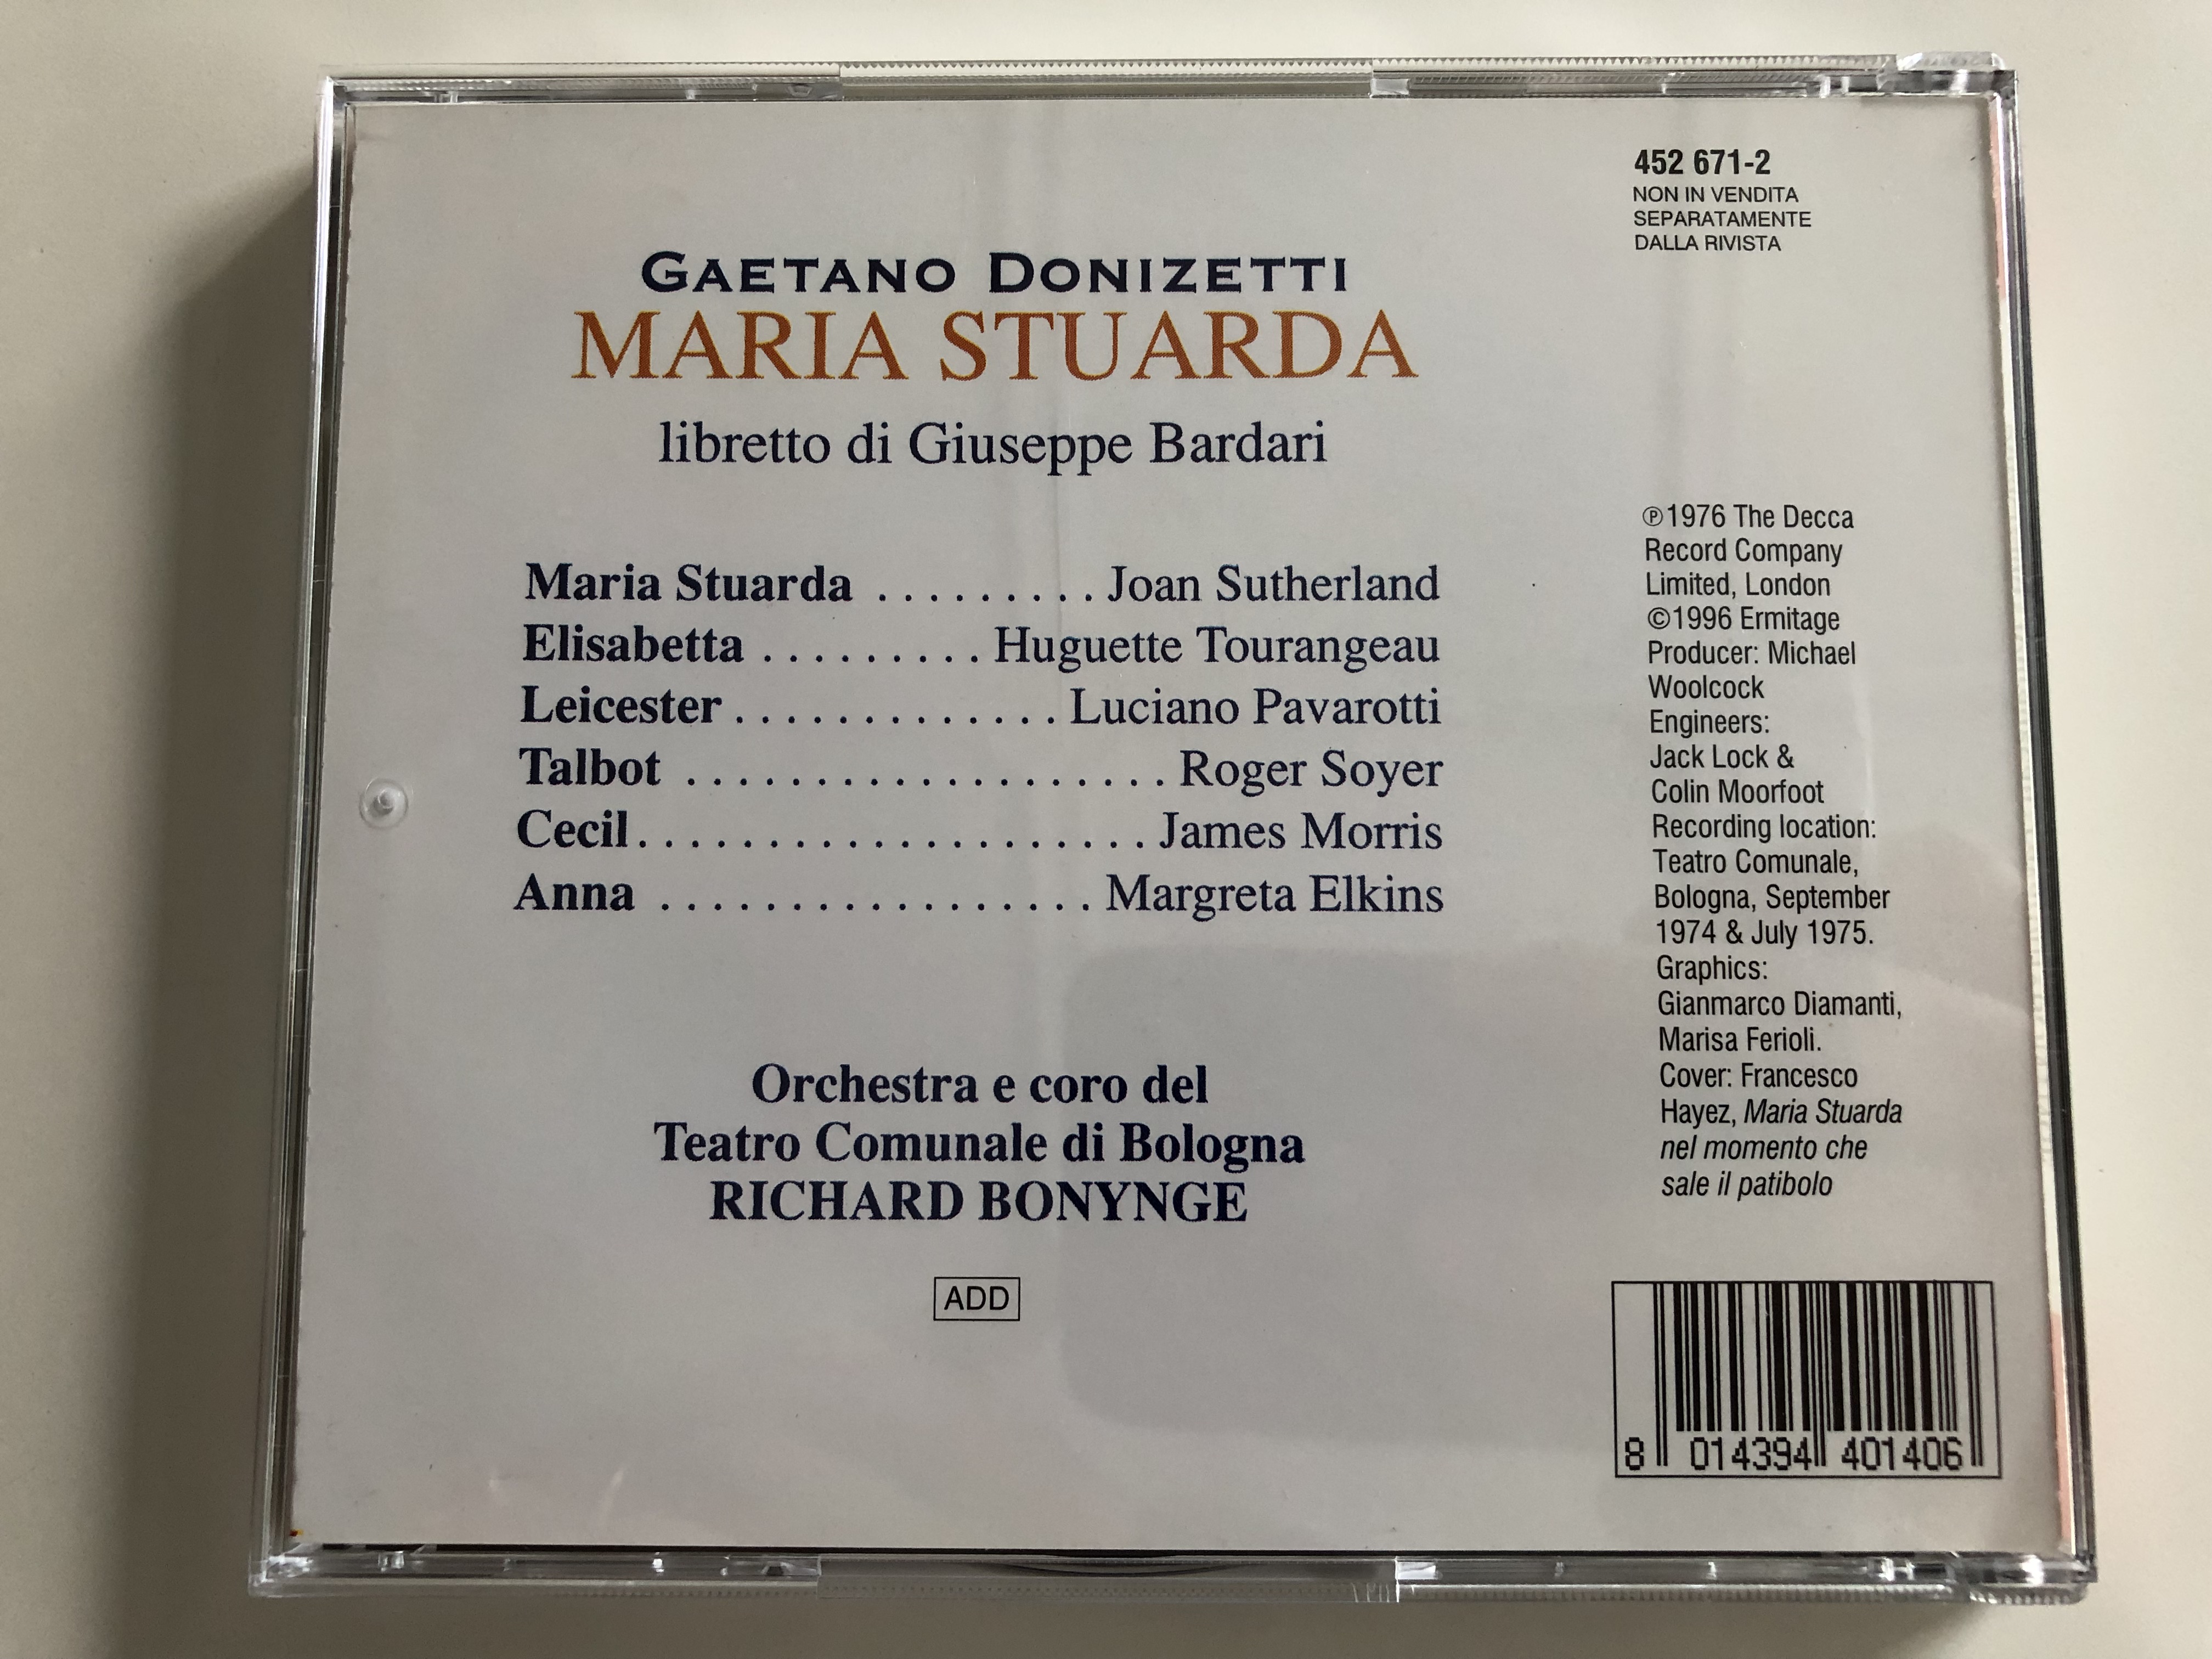 donizetti-maria-stuarda-atto-iii-sutherland-tourangeau-pavarotti-orchestra-e-coro-del-teatro-comunale-di-bologna-conducted-by-richard-bonynge-decca-audio-cd-1996-452-671-2-7-.jpg